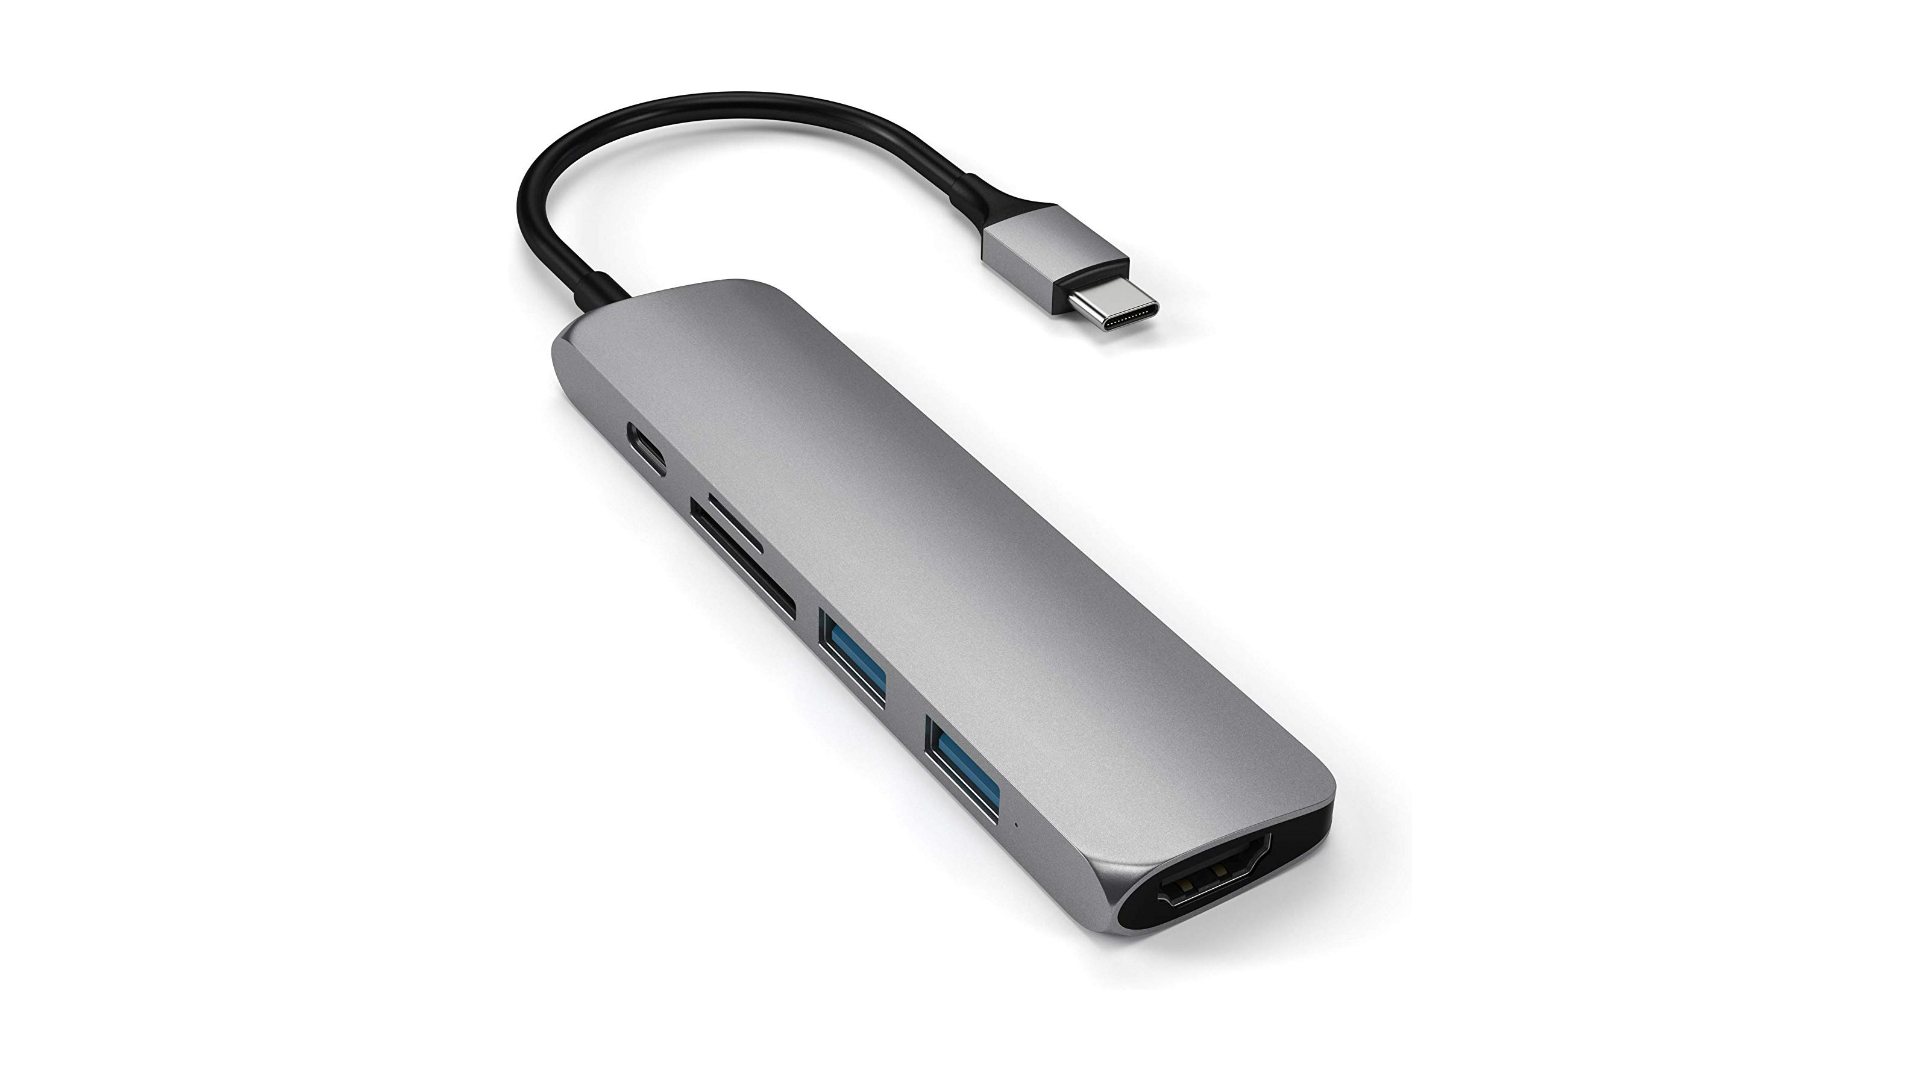 Satechi Slim Aluminum USB C Multi Port Adapter